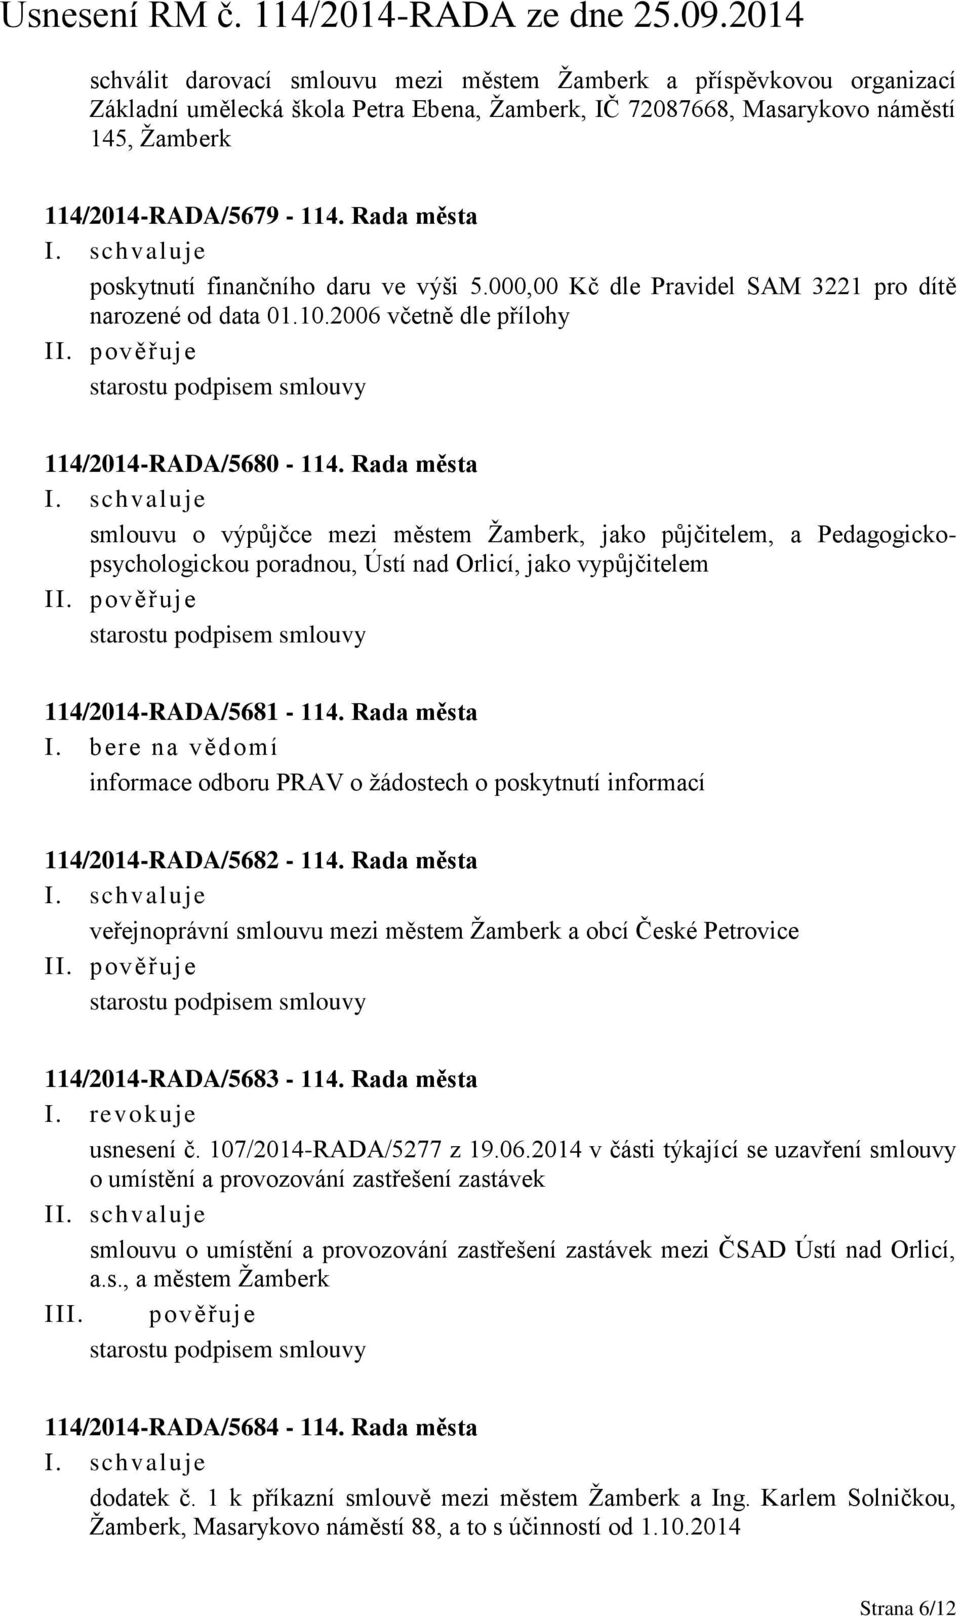 Rada města smlouvu o výpůjčce mezi městem Žamberk, jako půjčitelem, a Pedagogickopsychologickou poradnou, Ústí nad Orlicí, jako vypůjčitelem starostu podpisem smlouvy 114/2014-RADA/5681-114.